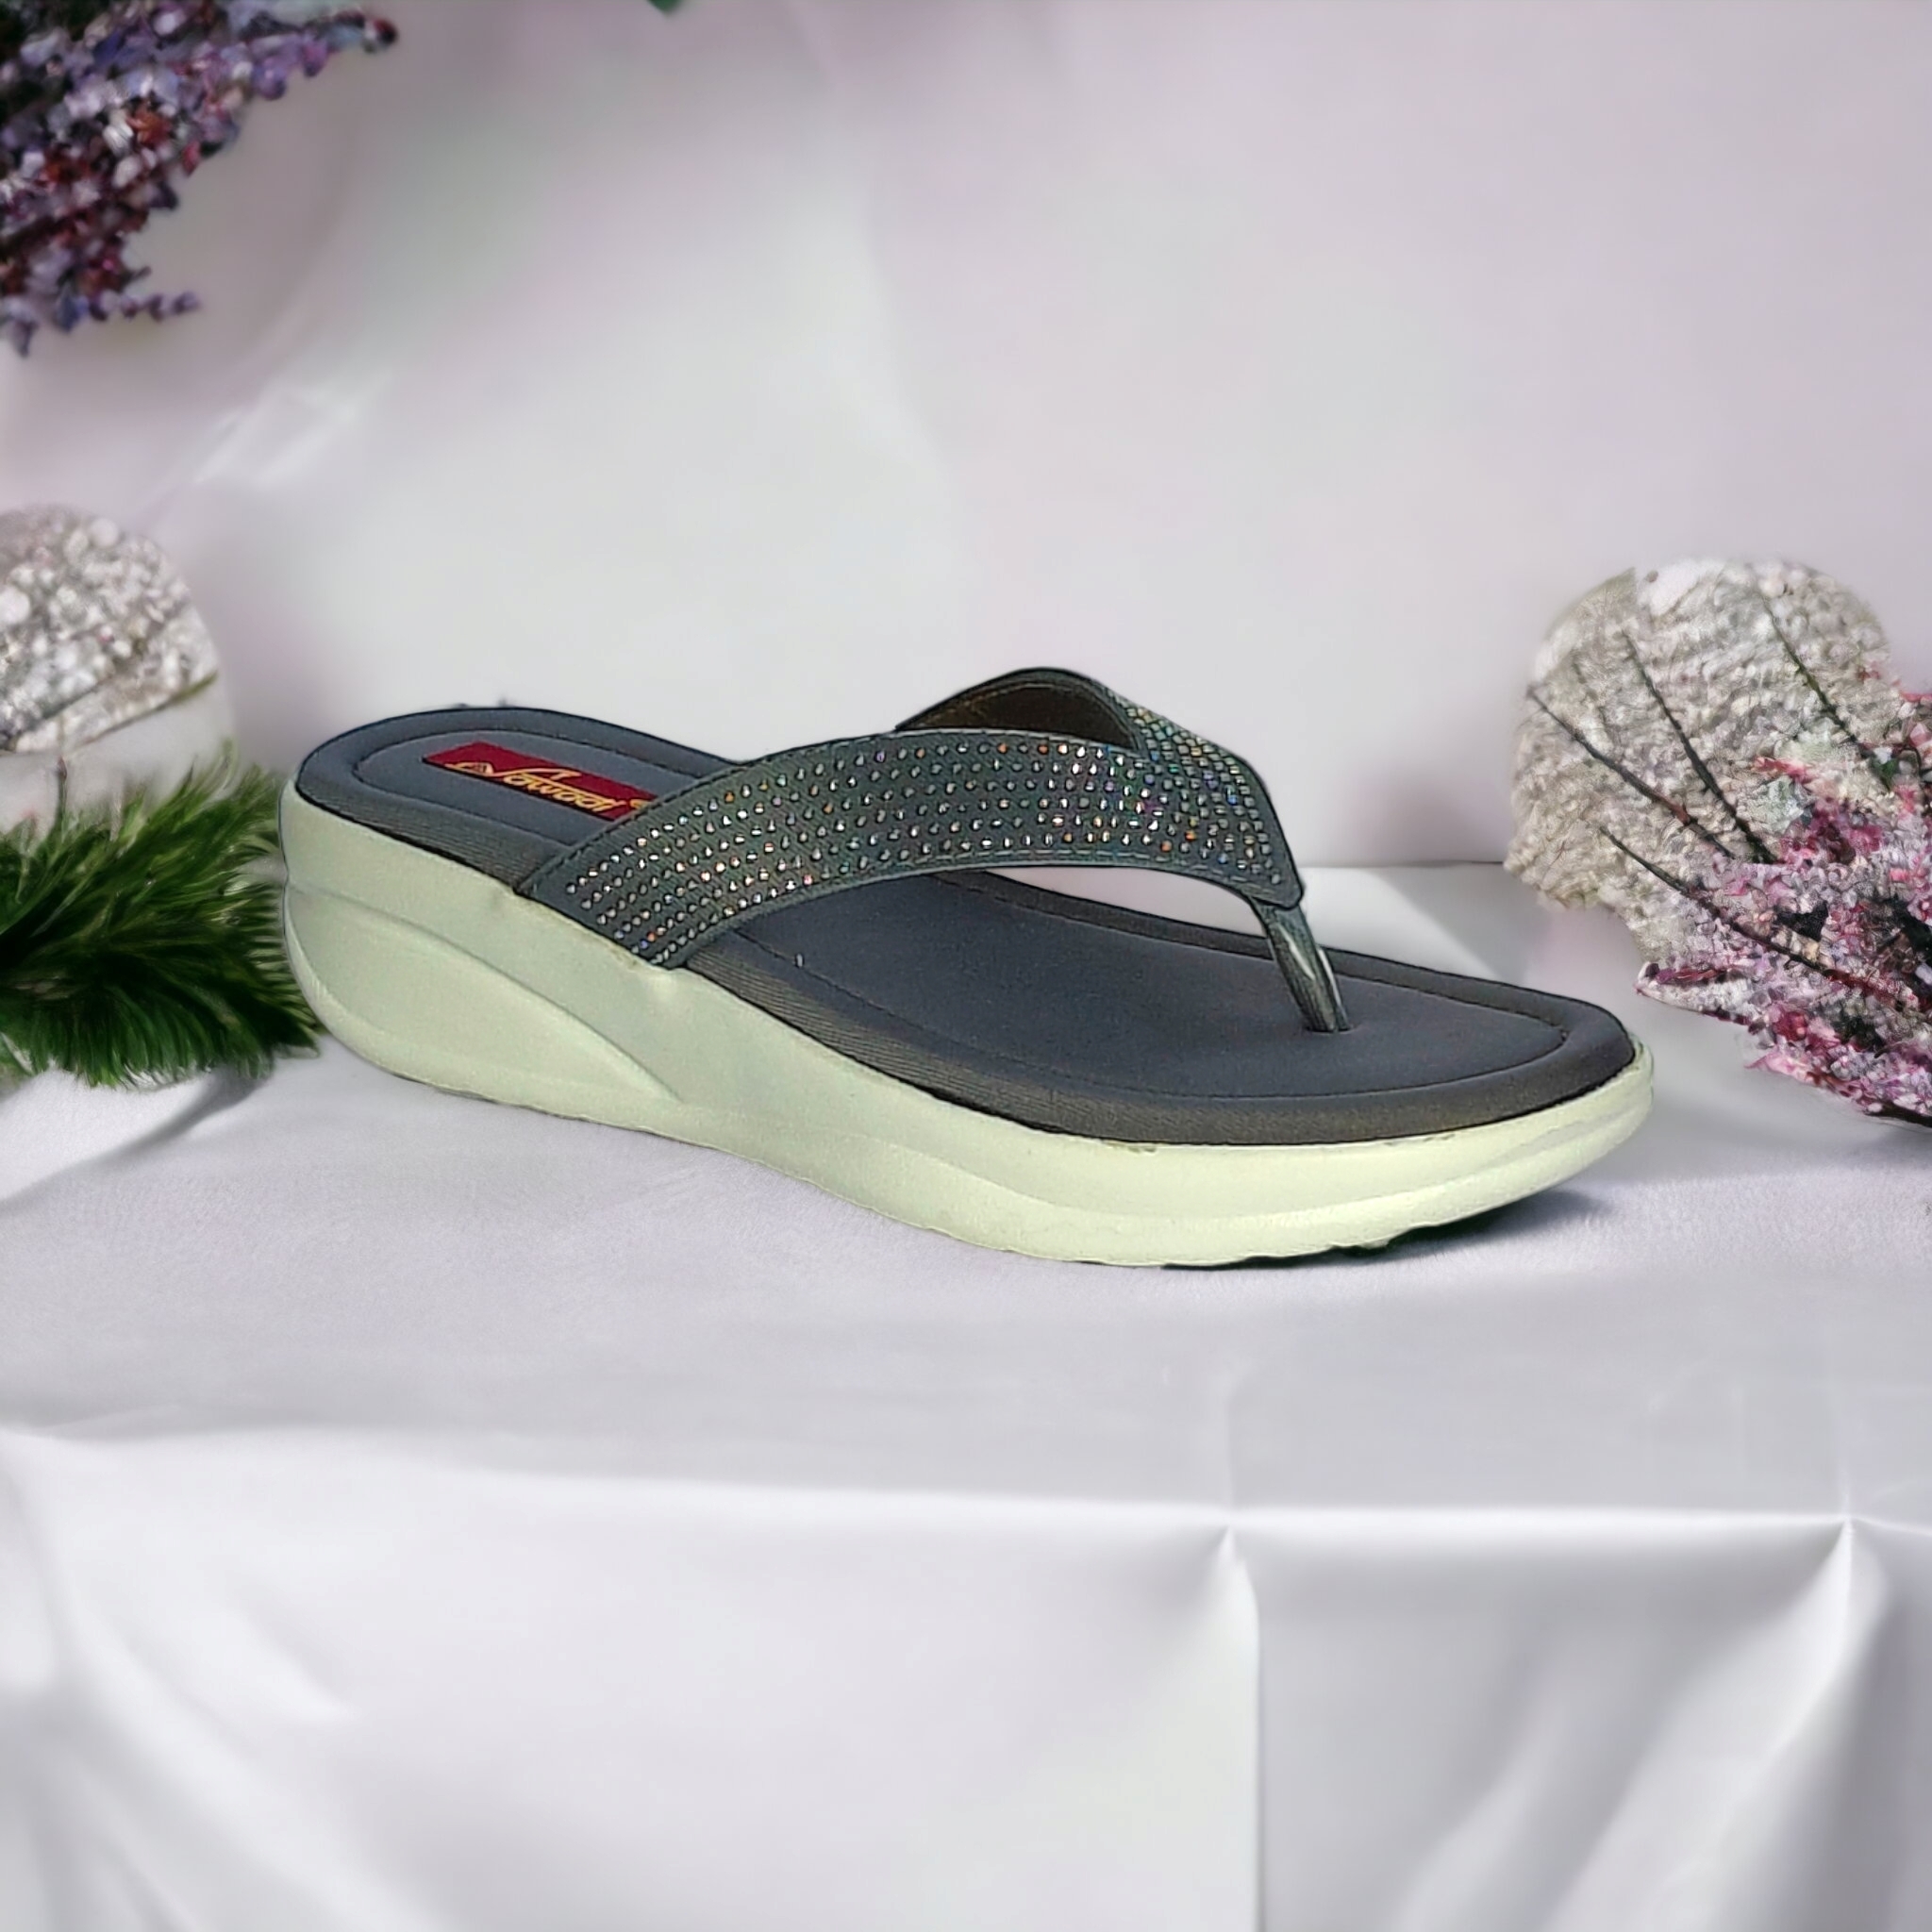 SAWADI | Women Grey Wedges Sandal undefined